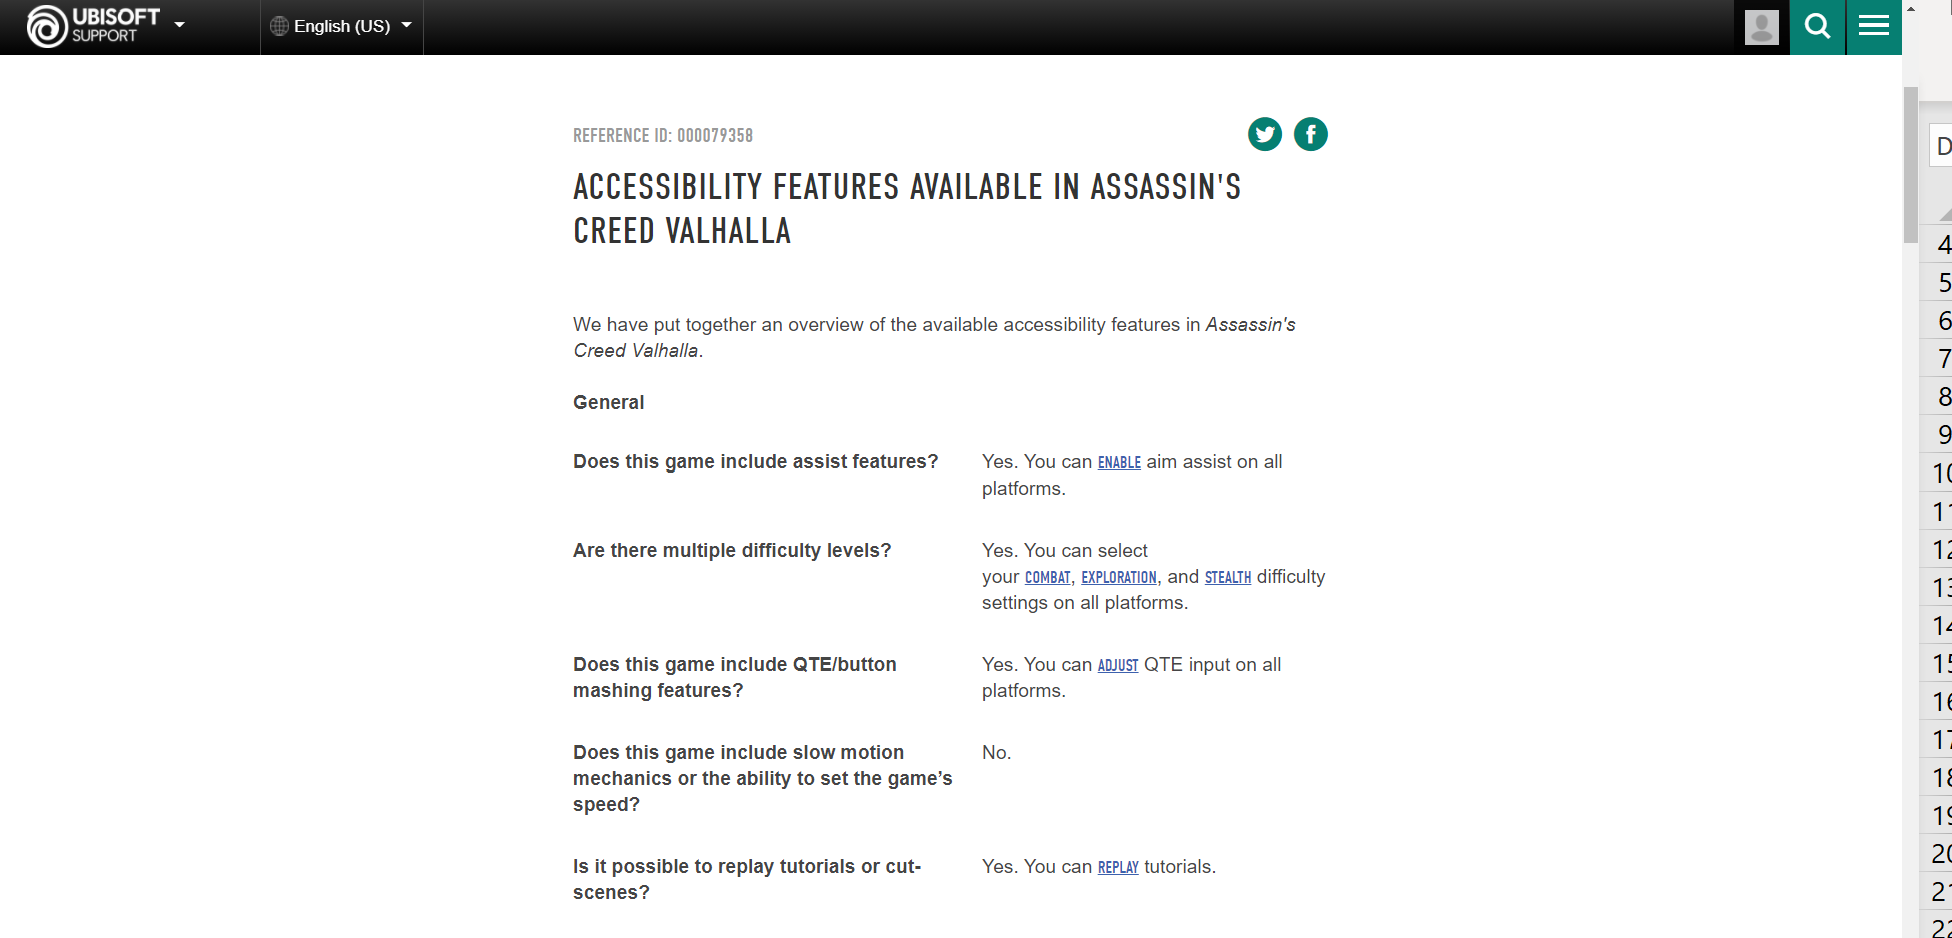 Ubisoft 公式サイトにあるアサシン クリード ヴァルハラの高レベル アクセシビリティ ドキュメントのスクリーンショット。